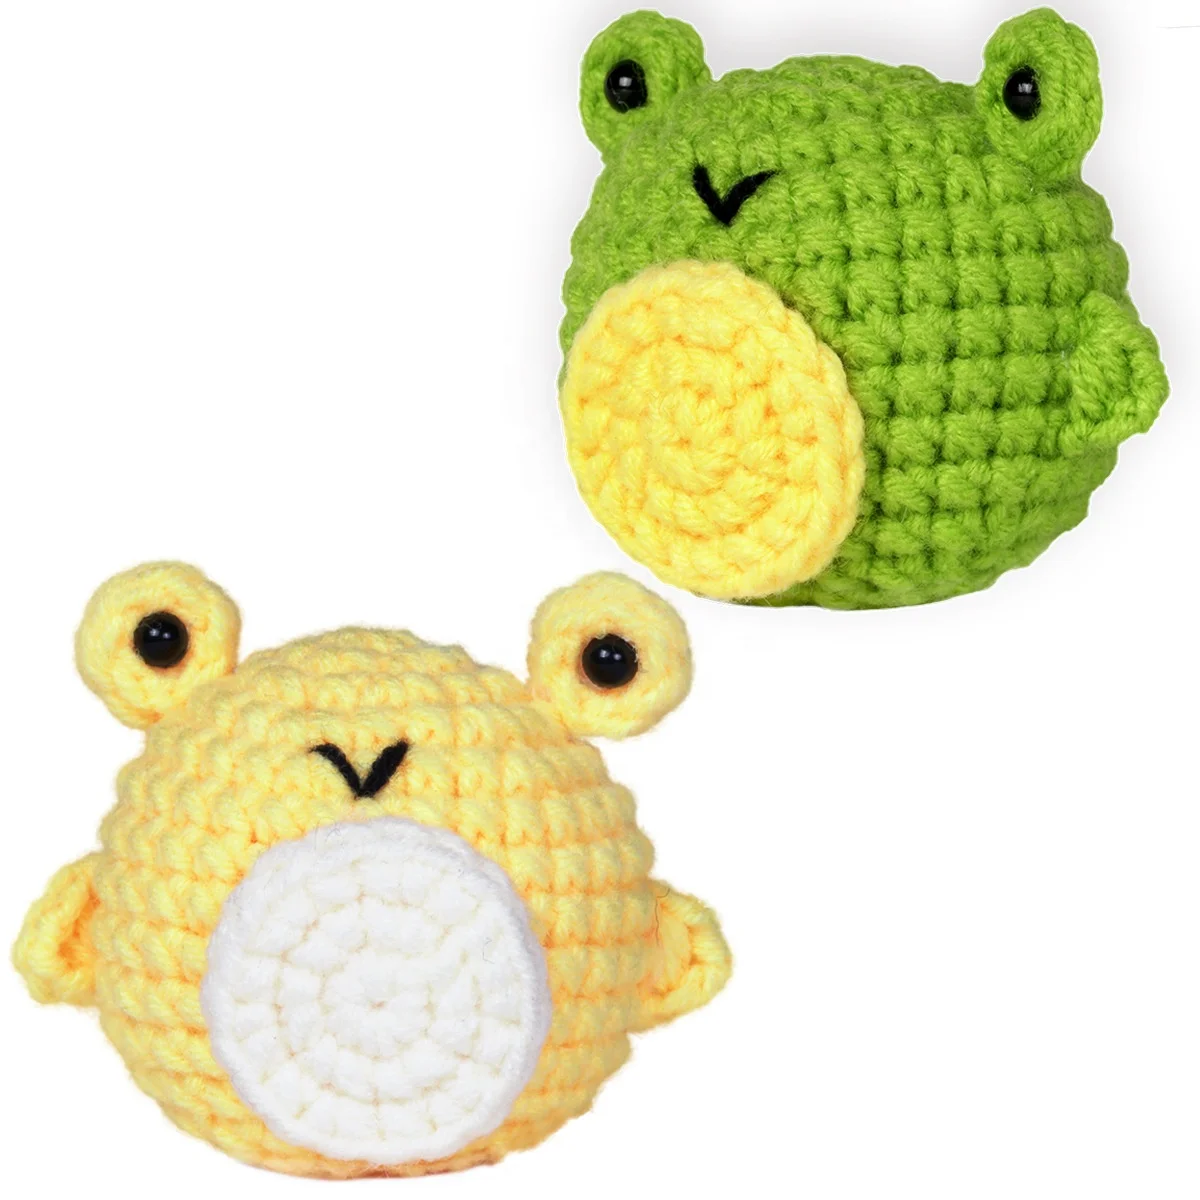 Custom Crochet Animal Kit DIY Crochet Starter Kit for Beginners Adults and Kids